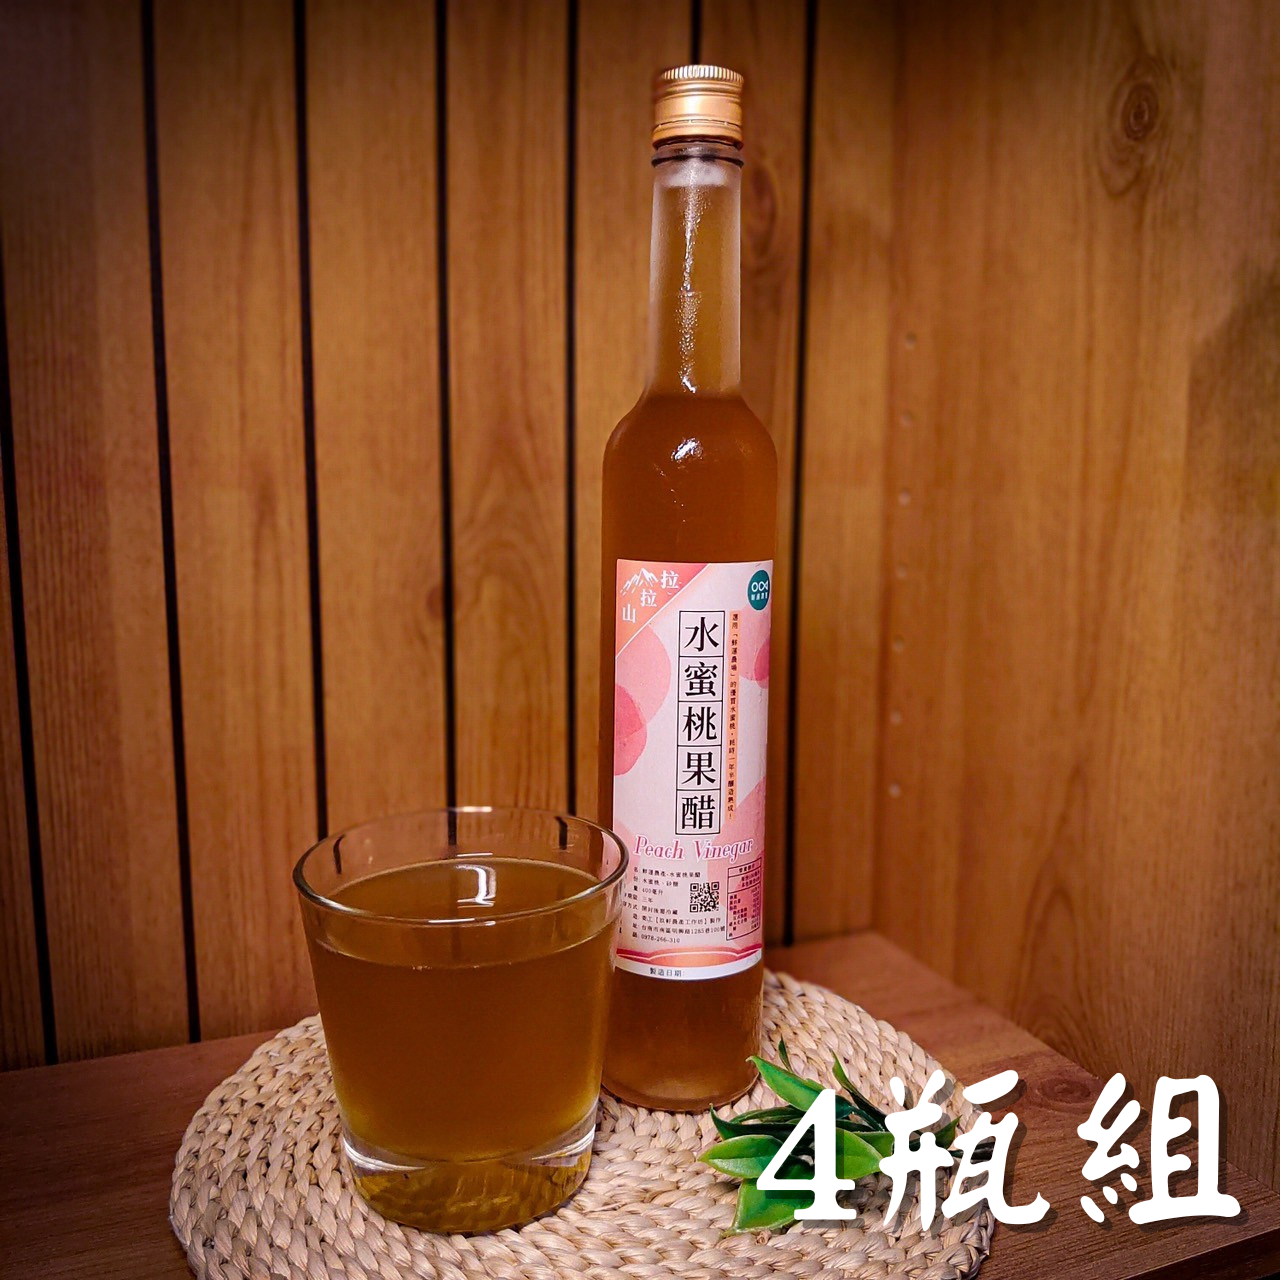 【鮮運農產運銷】水蜜桃醋(400ml/瓶)x4